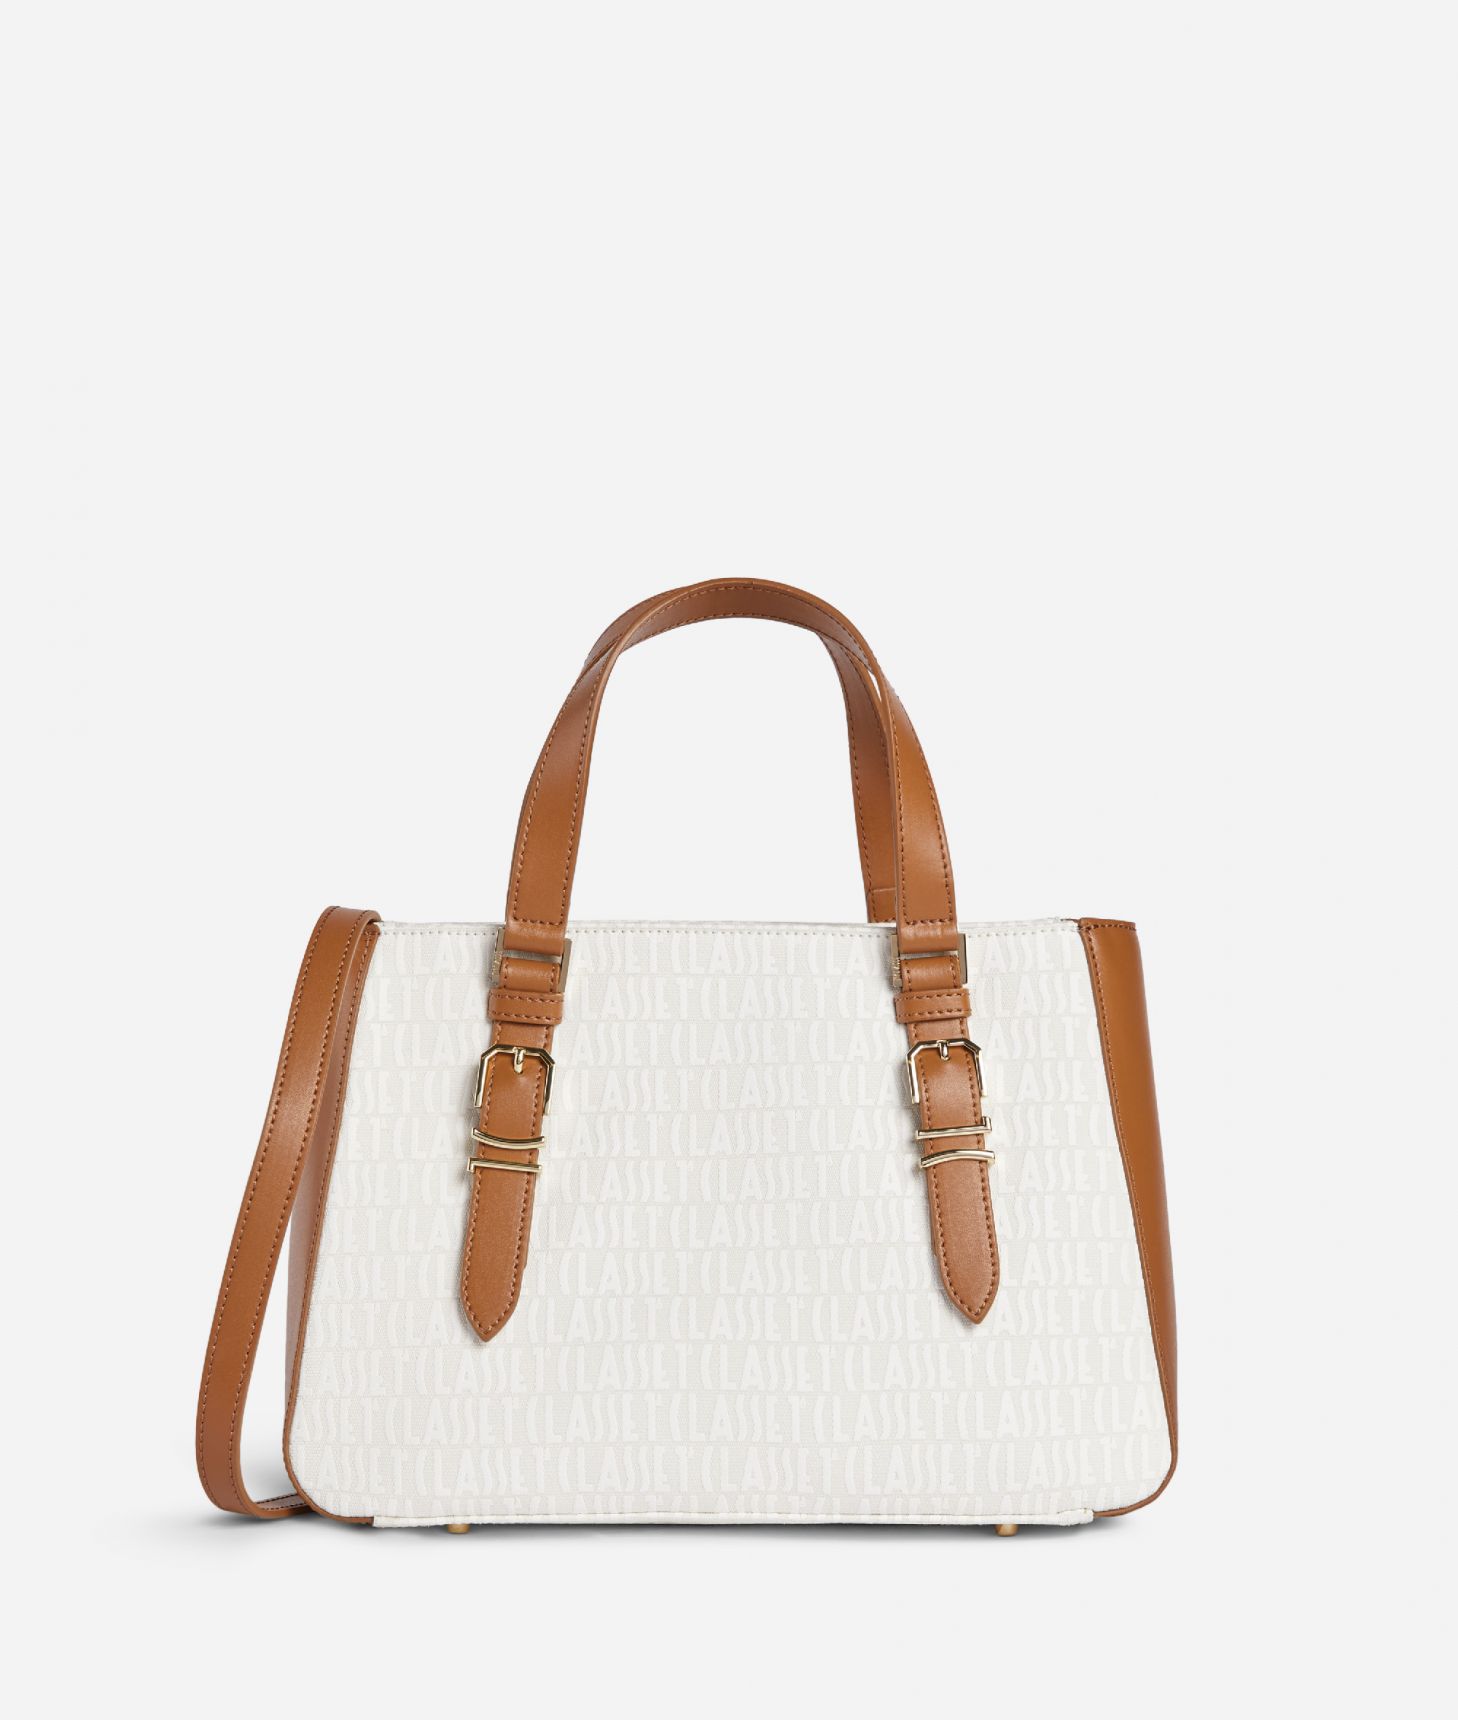 1A Classe Sand Handbag with shoulder strap Natural,front